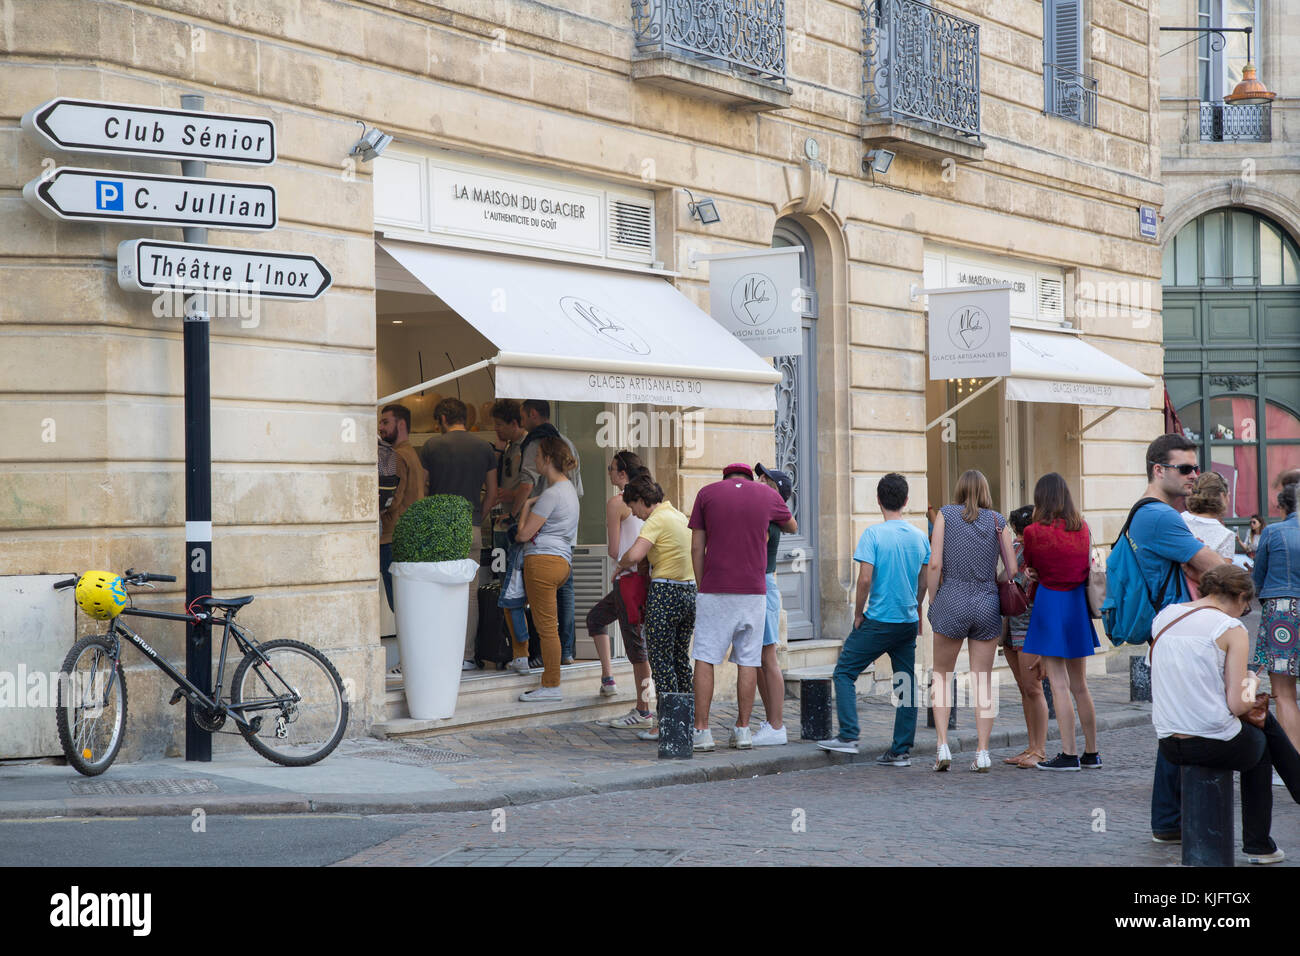 Maison du Glacier Ice Cream Parlor; Place Saint-Pierre Square; Bordeaux;  France Stock Photo - Alamy